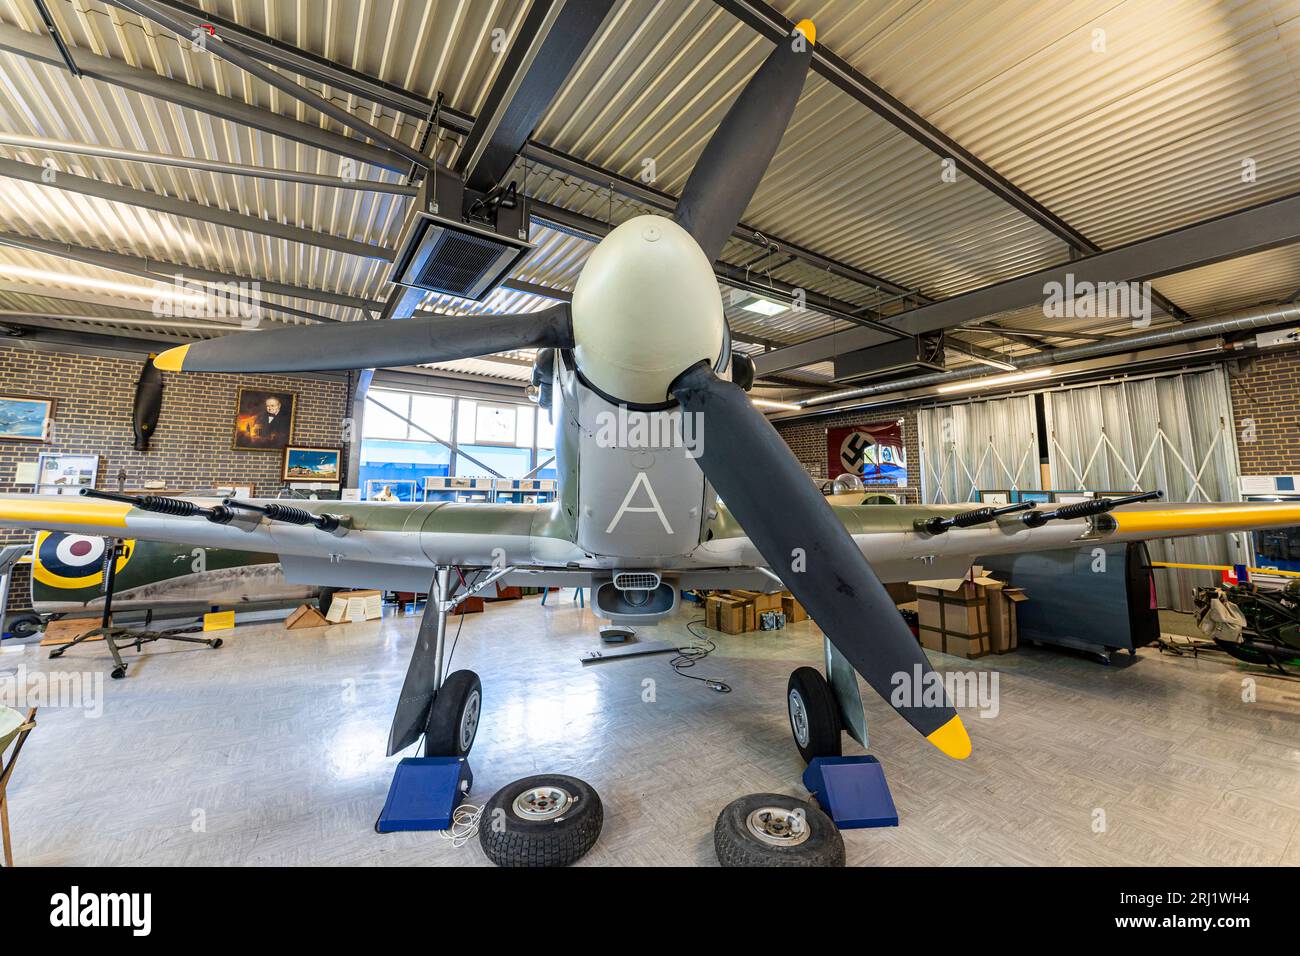 RAF Hurricane II exposé à l'intérieur du musée commémoratif Spitfire et Hurricane à l'ancien aérodrome de Manston de la RAF dans le Kent. Vue avant avec hélice. Banque D'Images